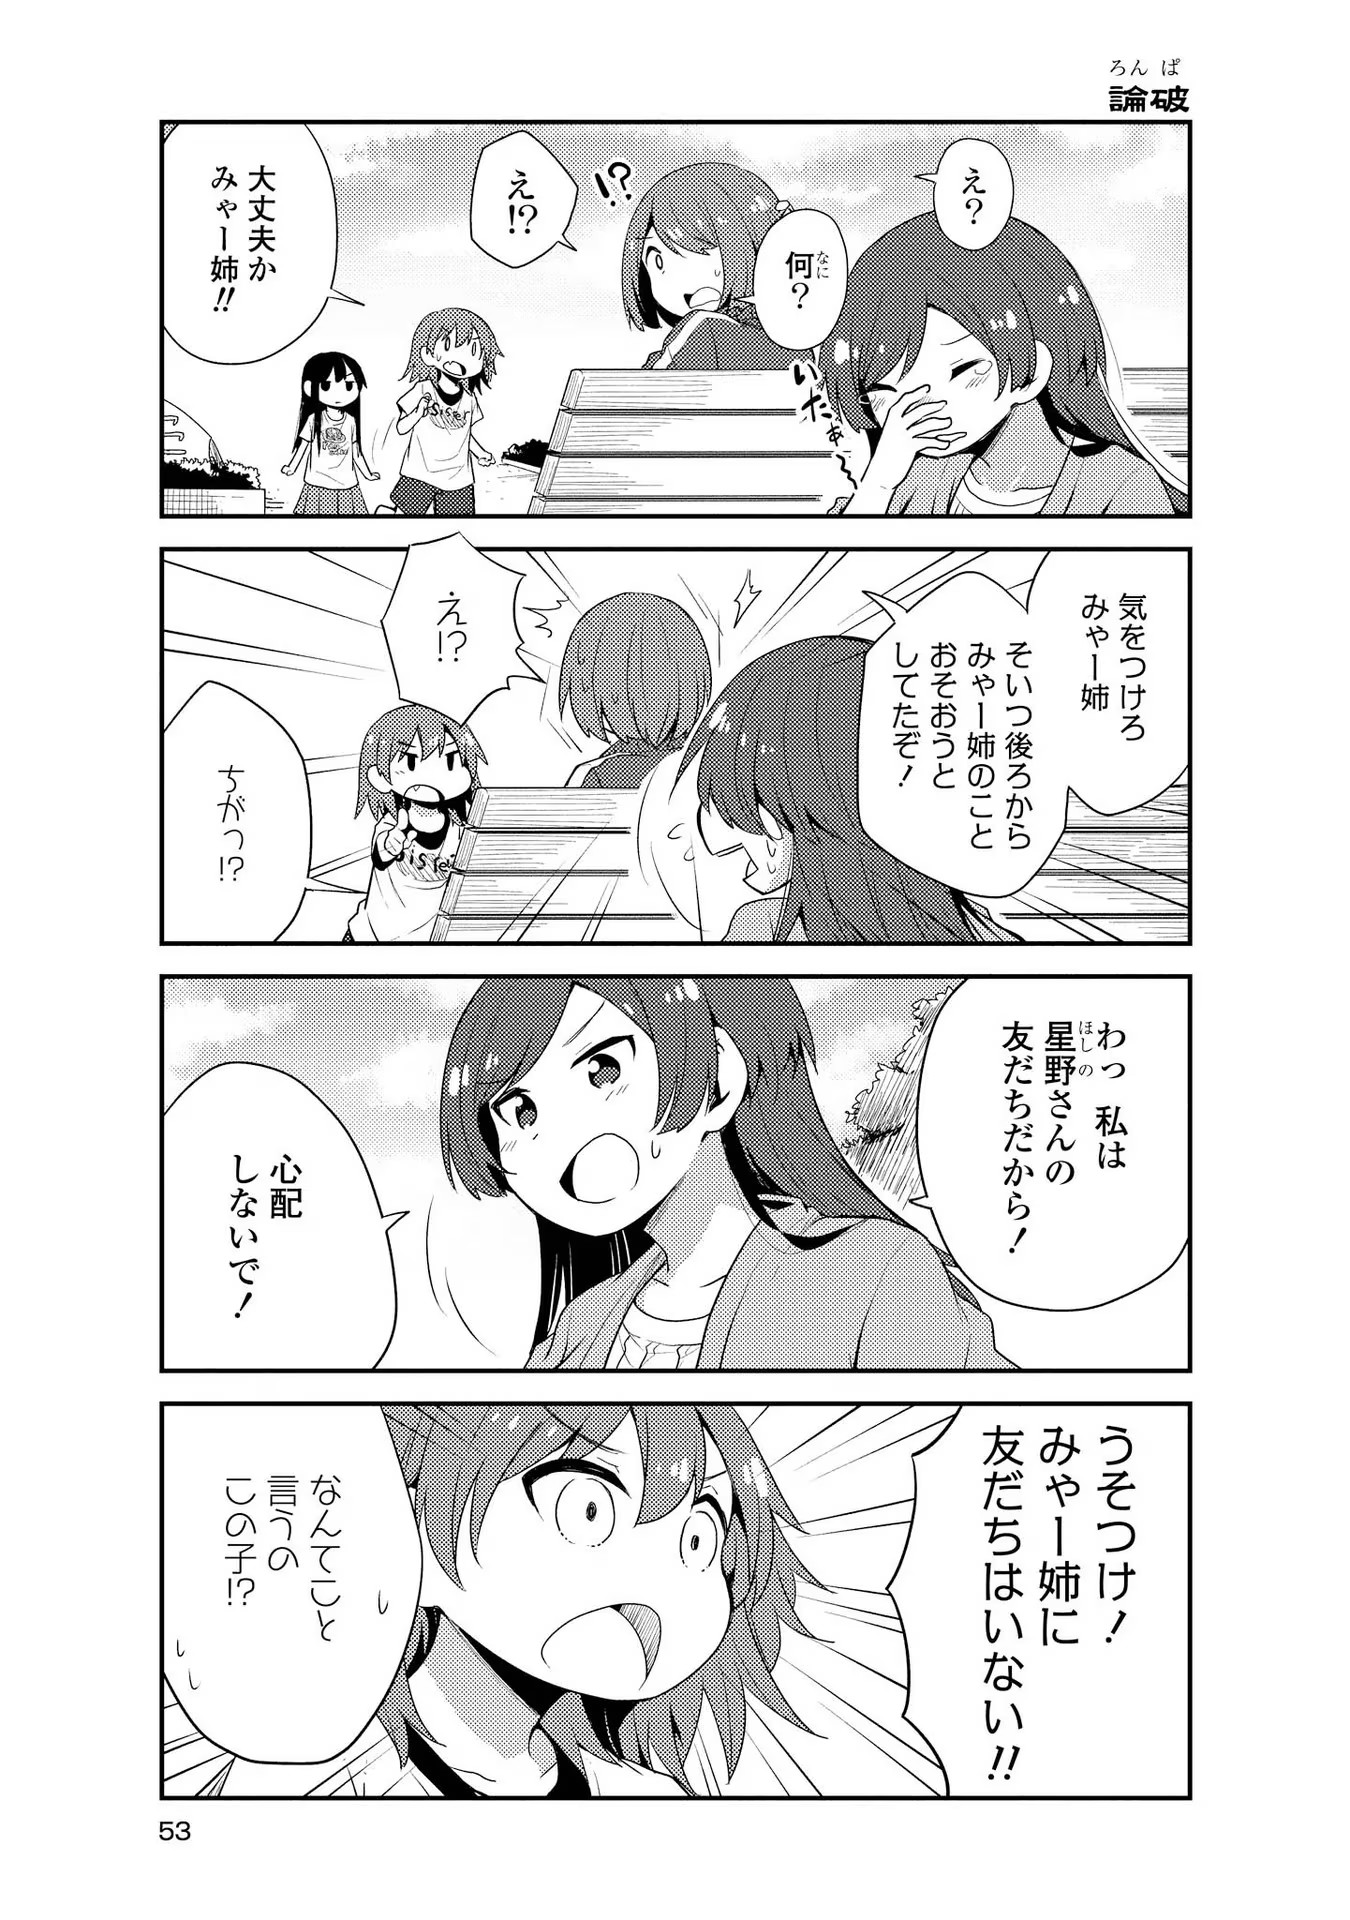 Watashi ni Tenshi ga Maiorita! - Chapter 14 - Page 5